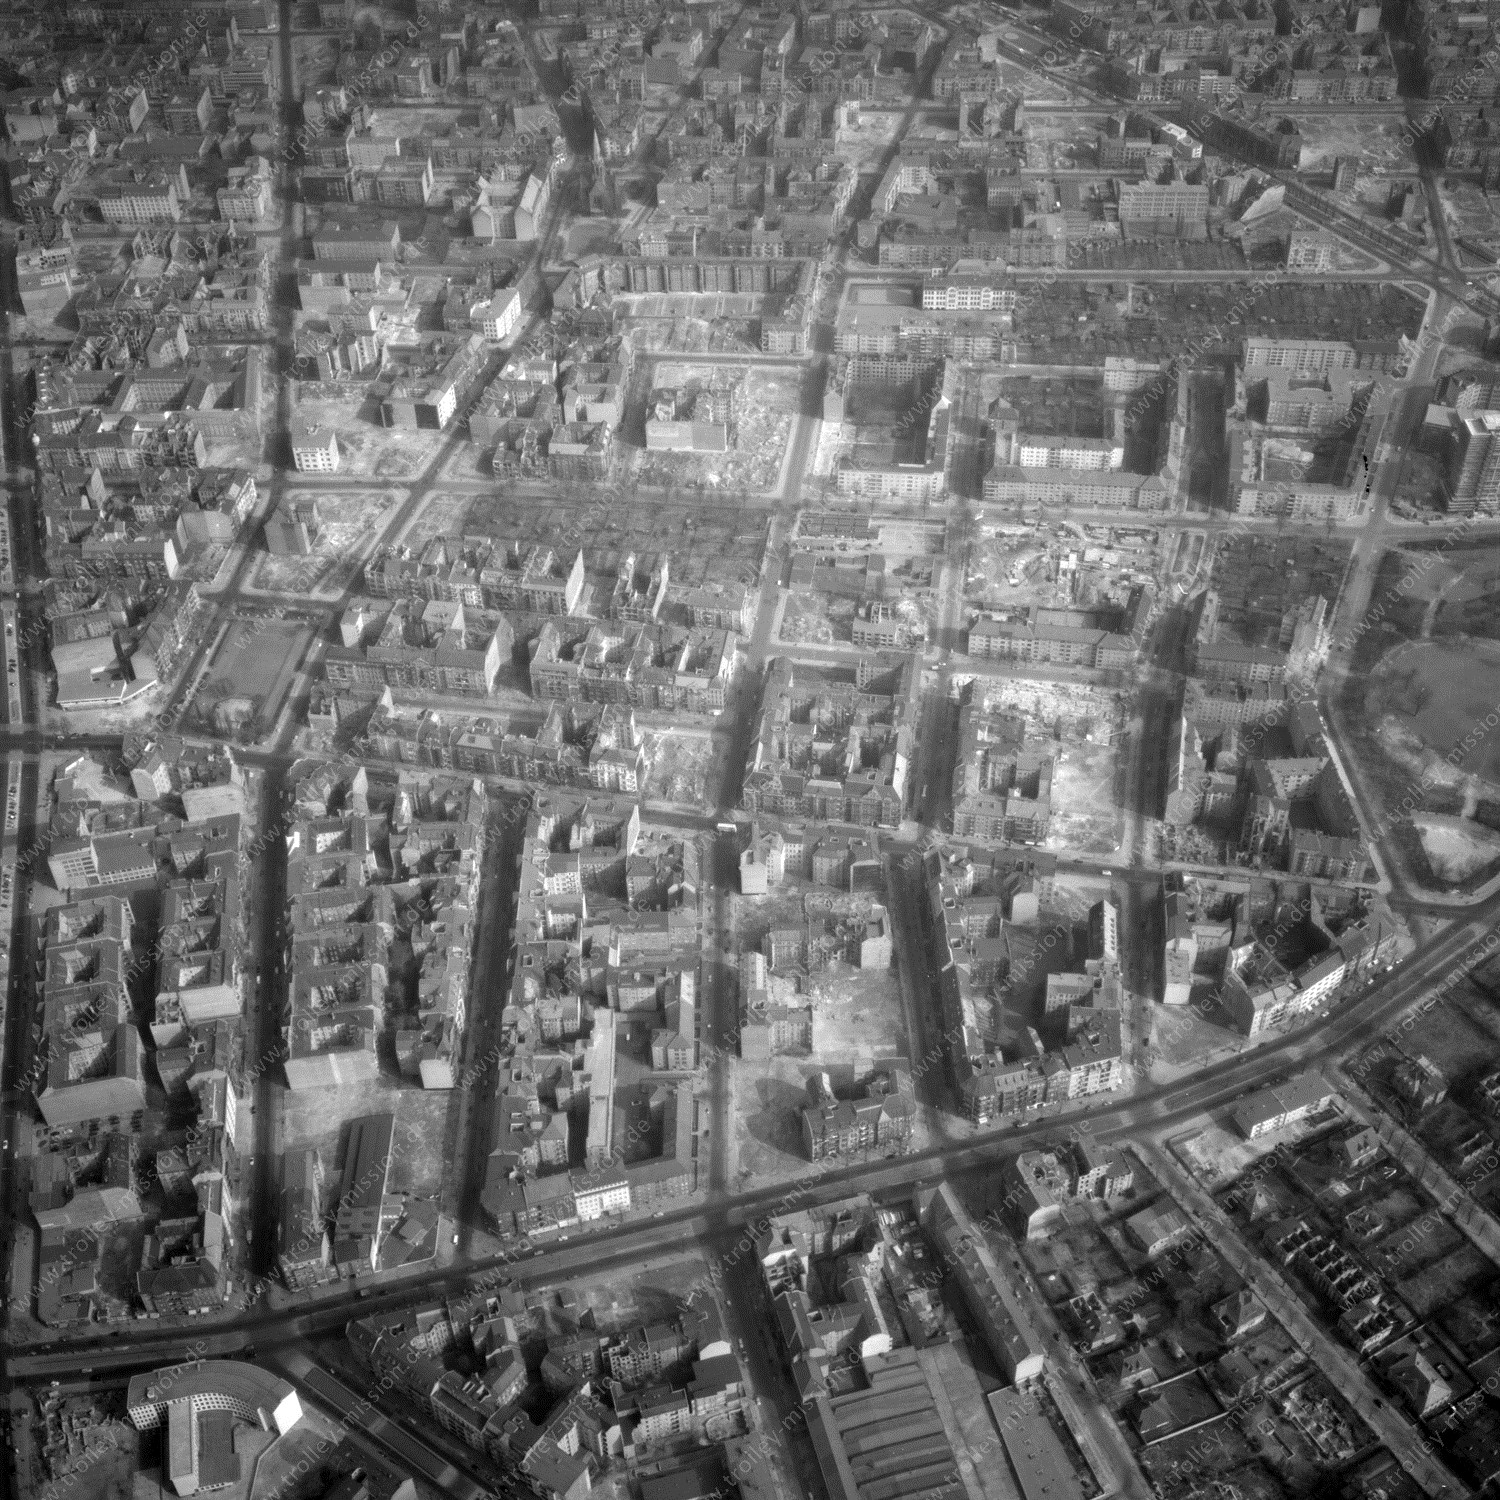 Alte Fotos und Luftbilder von Berlin - Luftbildaufnahme Nr. 10 - Historische Luftaufnahmen von West-Berlin aus dem Jahr 1954 - Flugstrecke Charlie